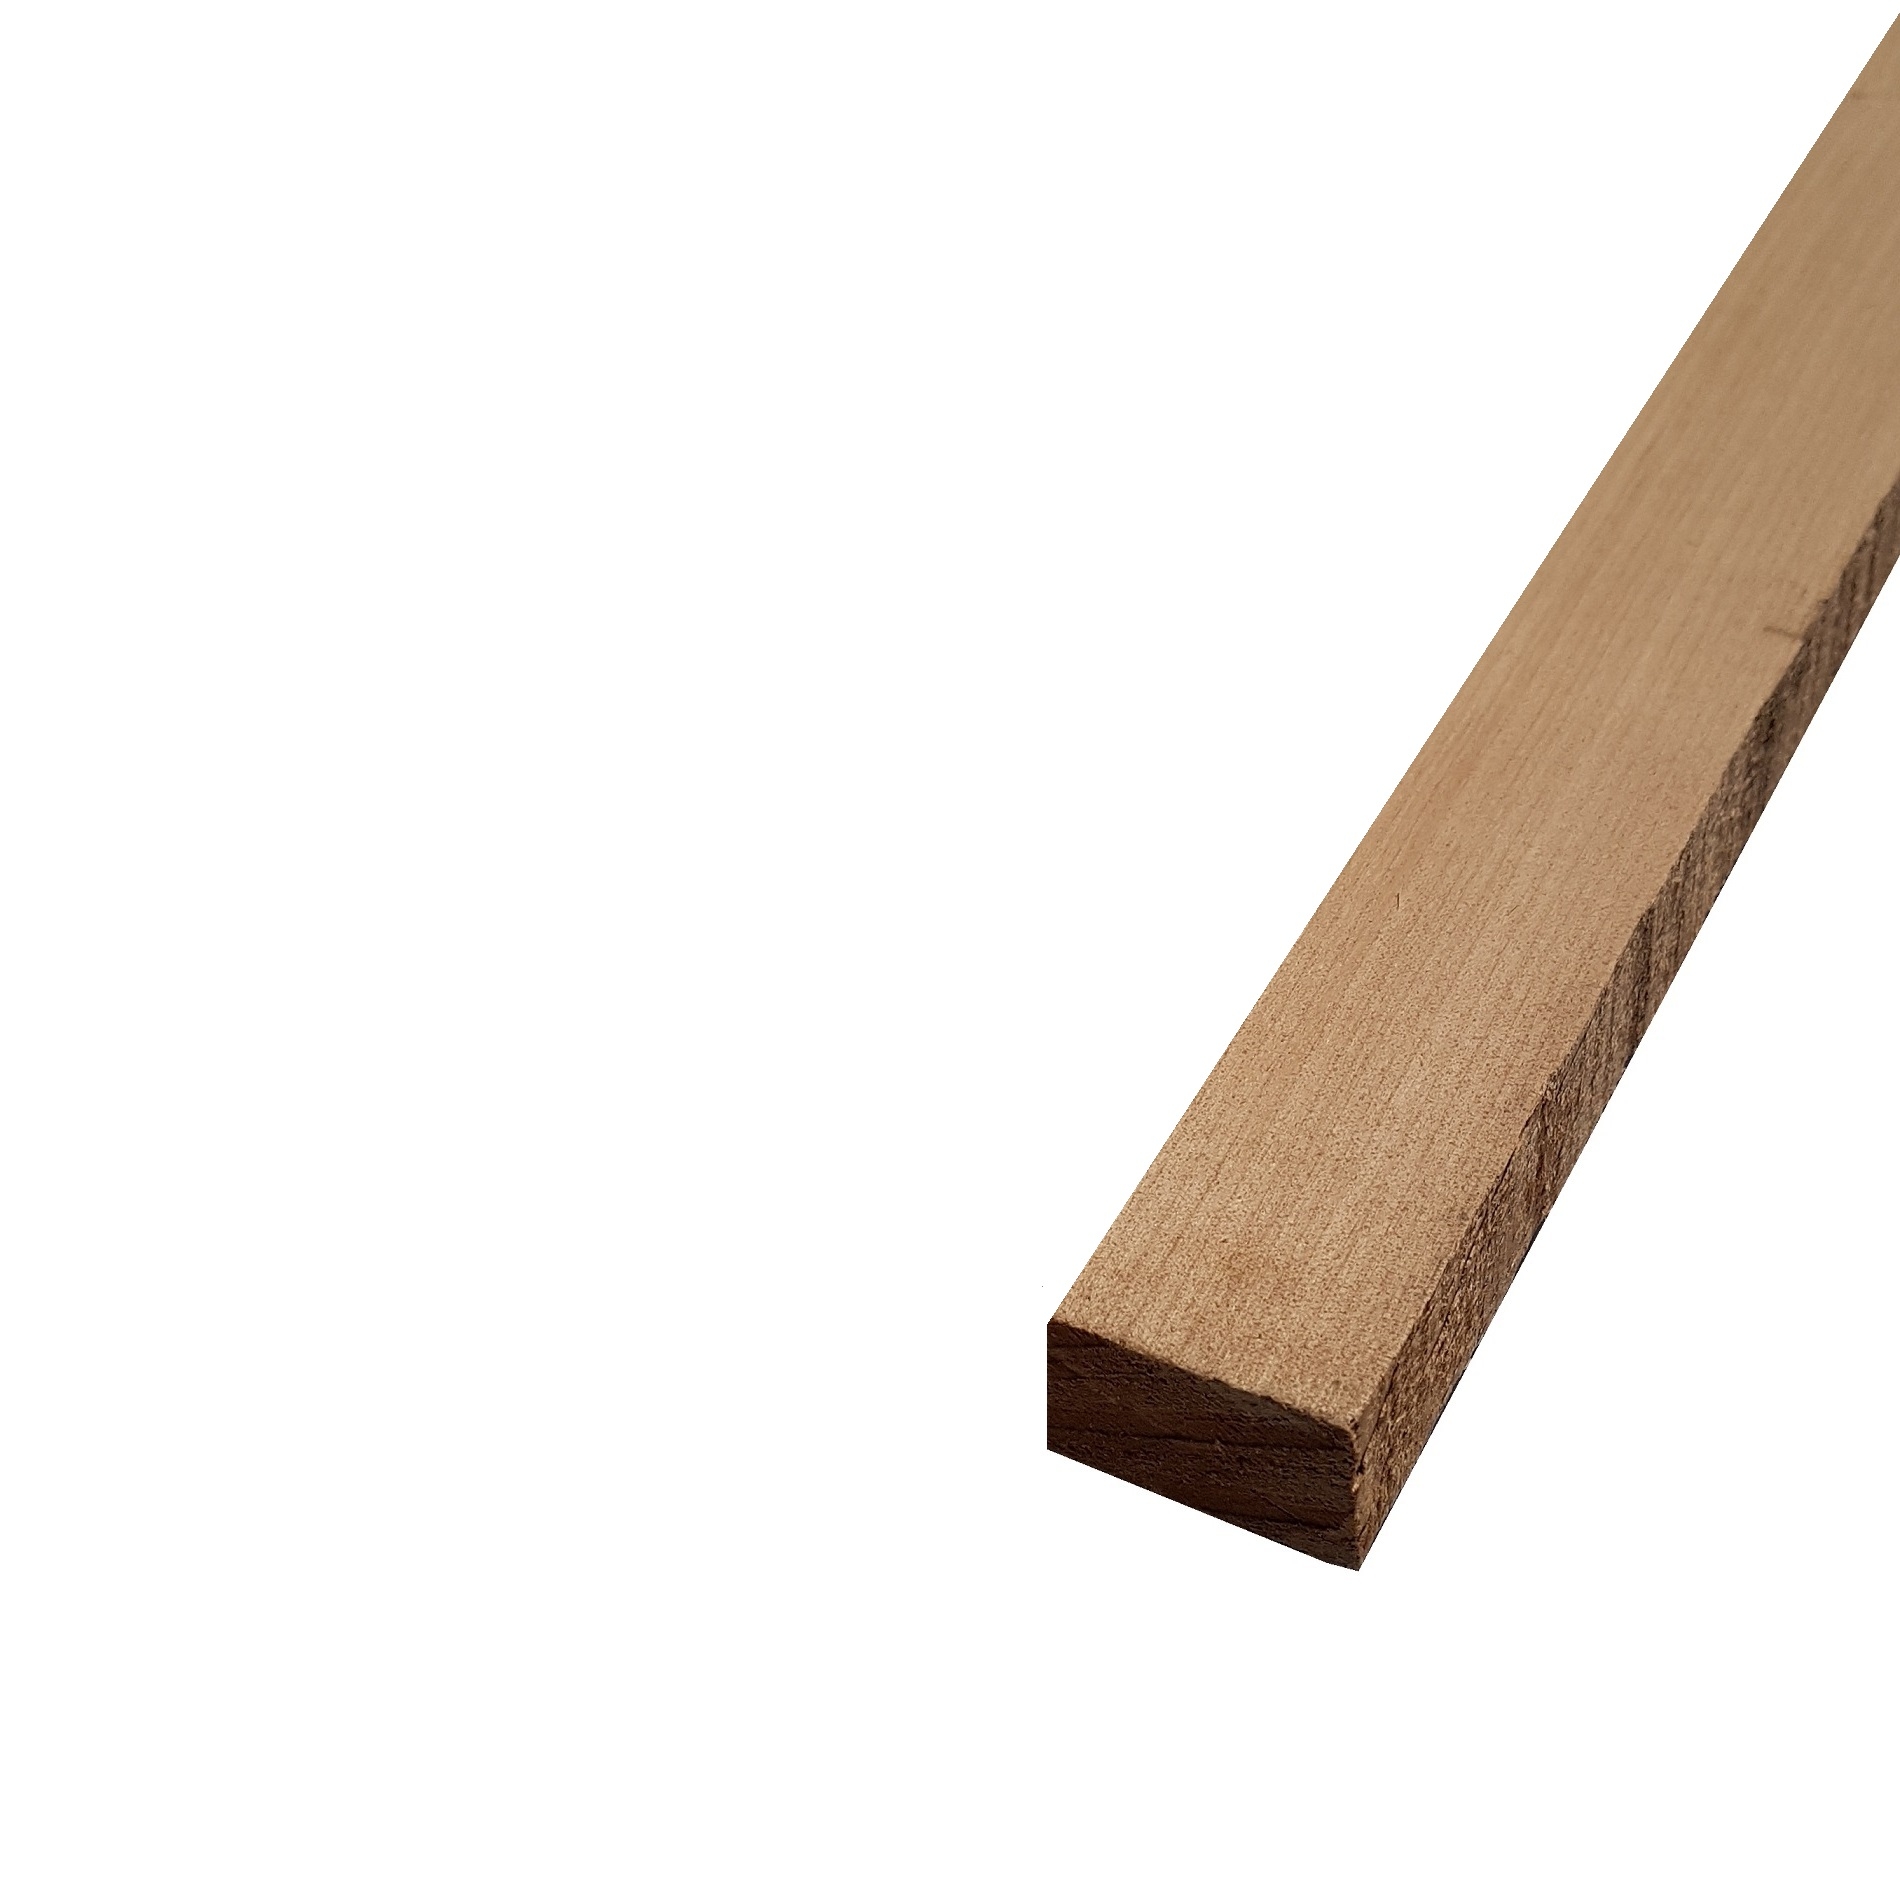 Listello legno di Acero Pacific Coast Maple Calibrato grezzo mm 24 x Varie Misure x 1200